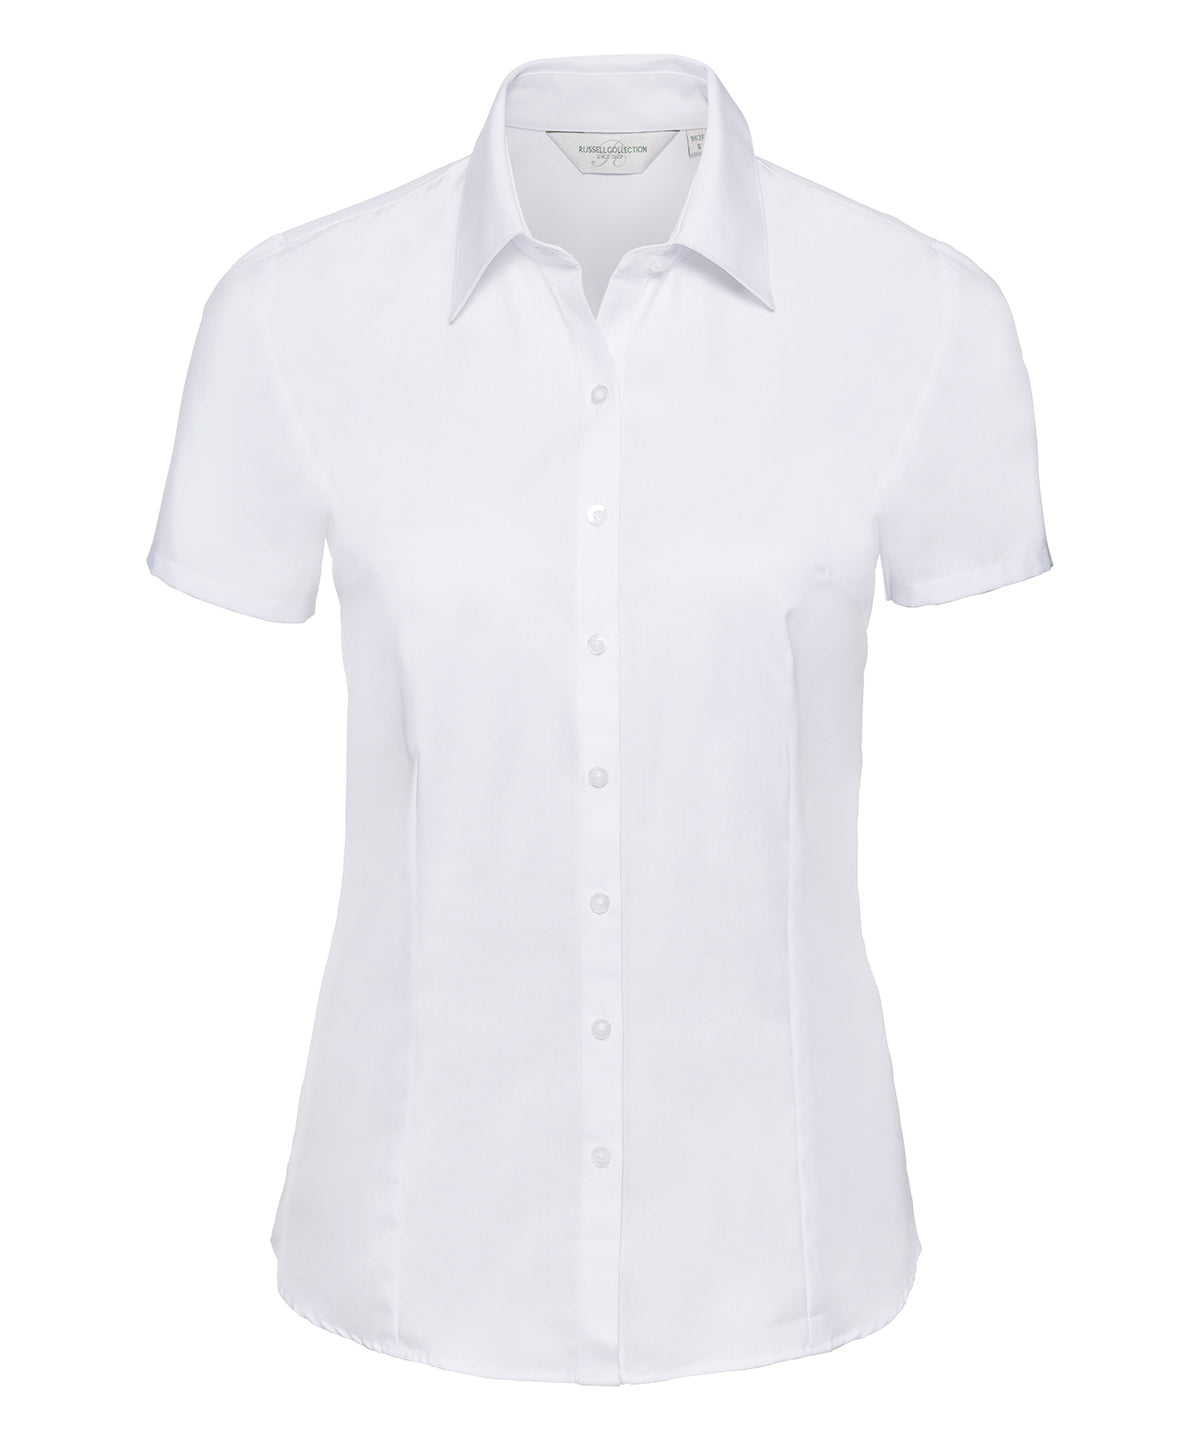 Women's short sleeve herringbone shirt